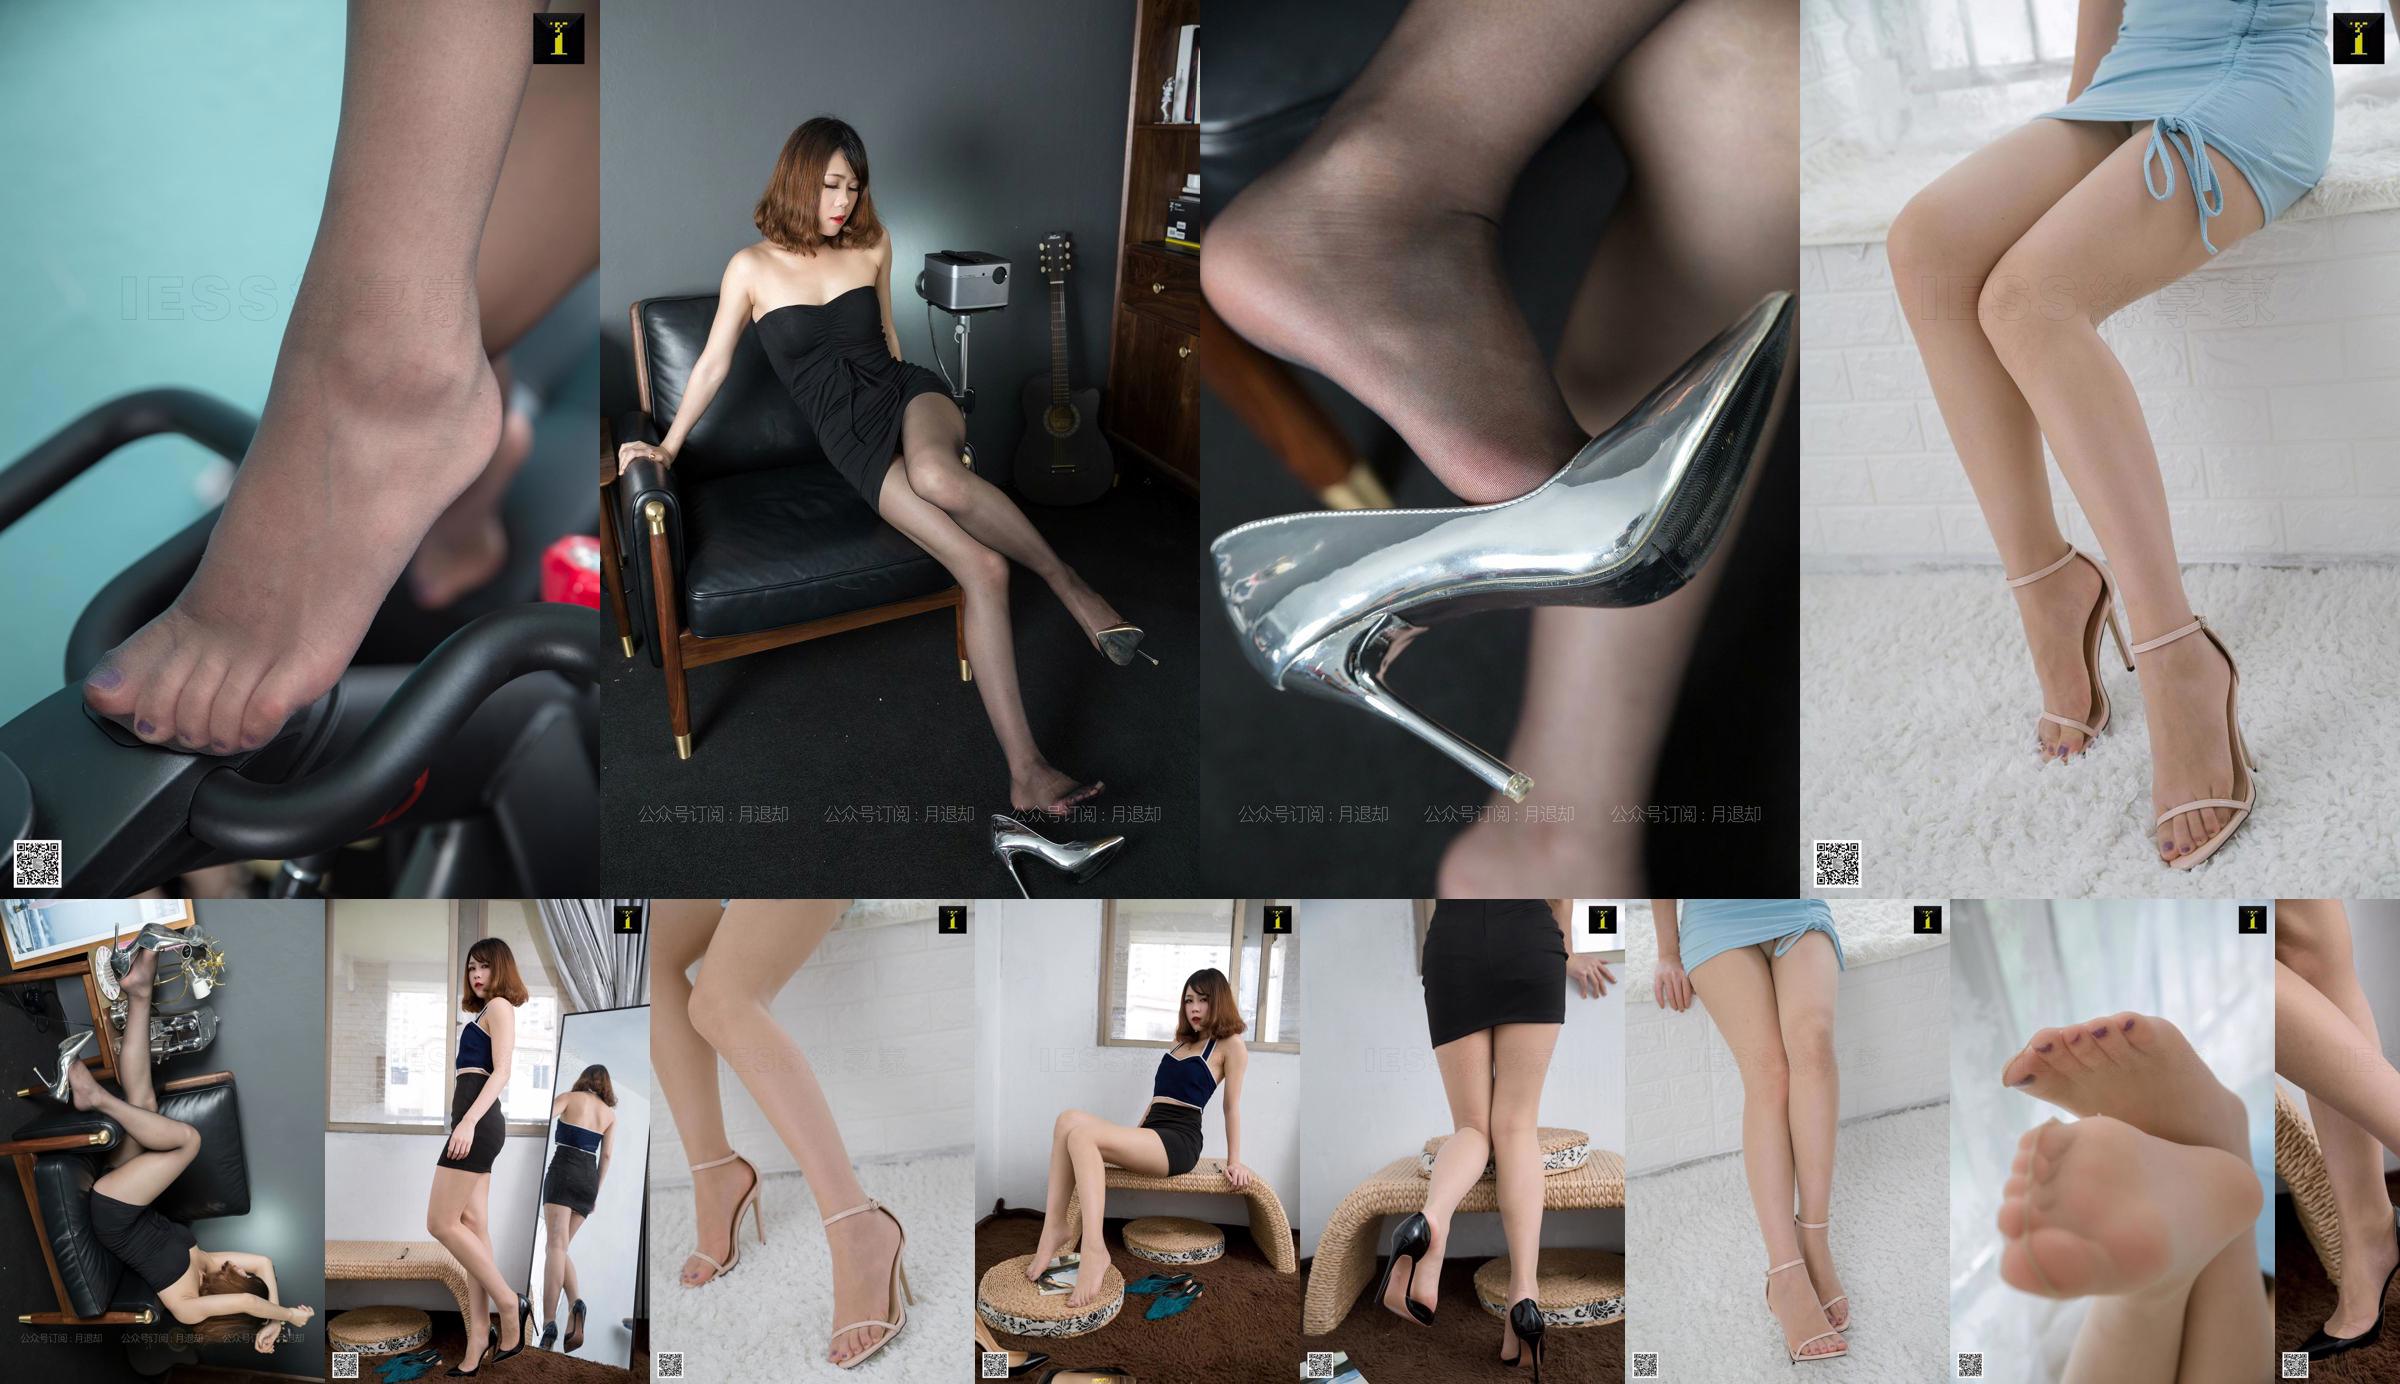 Model Diudiu "W biurze można uprawiać sport" [IESS Weisiquxiang] Piękne nogi w pończochach No.ea9afc Strona 4